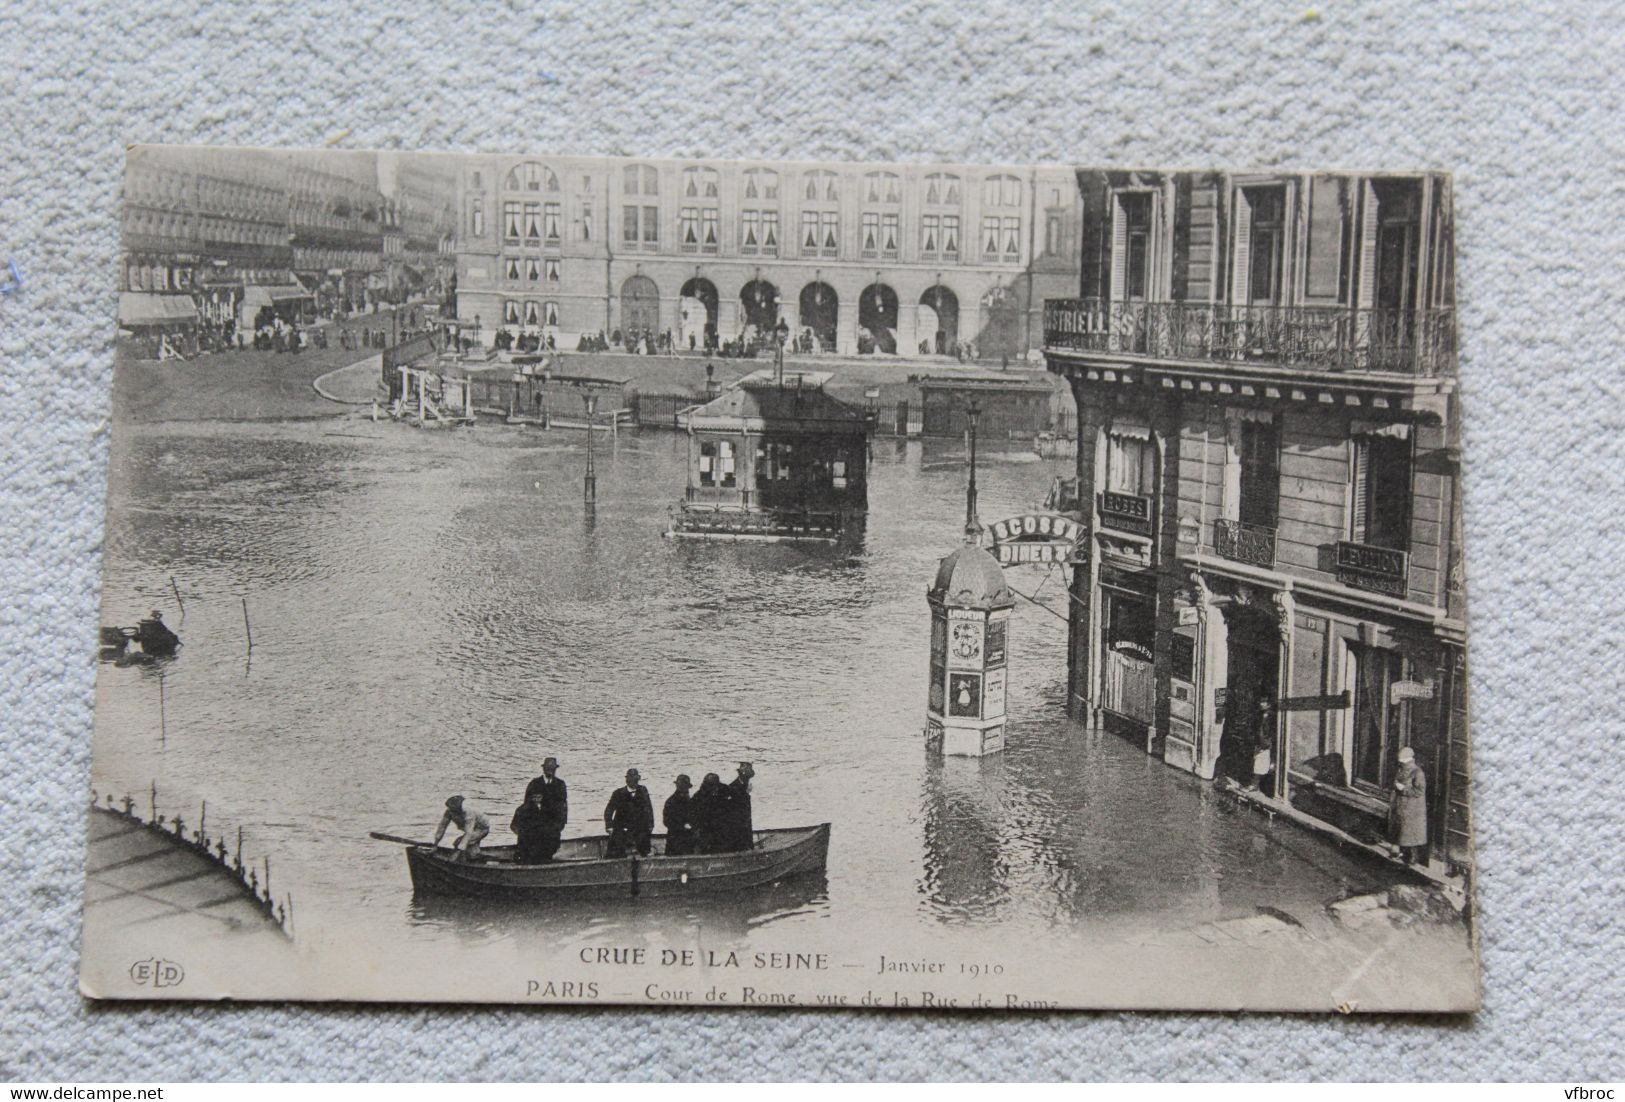 Paris 75, inondations, cour de Rome vue de la rue de Rome